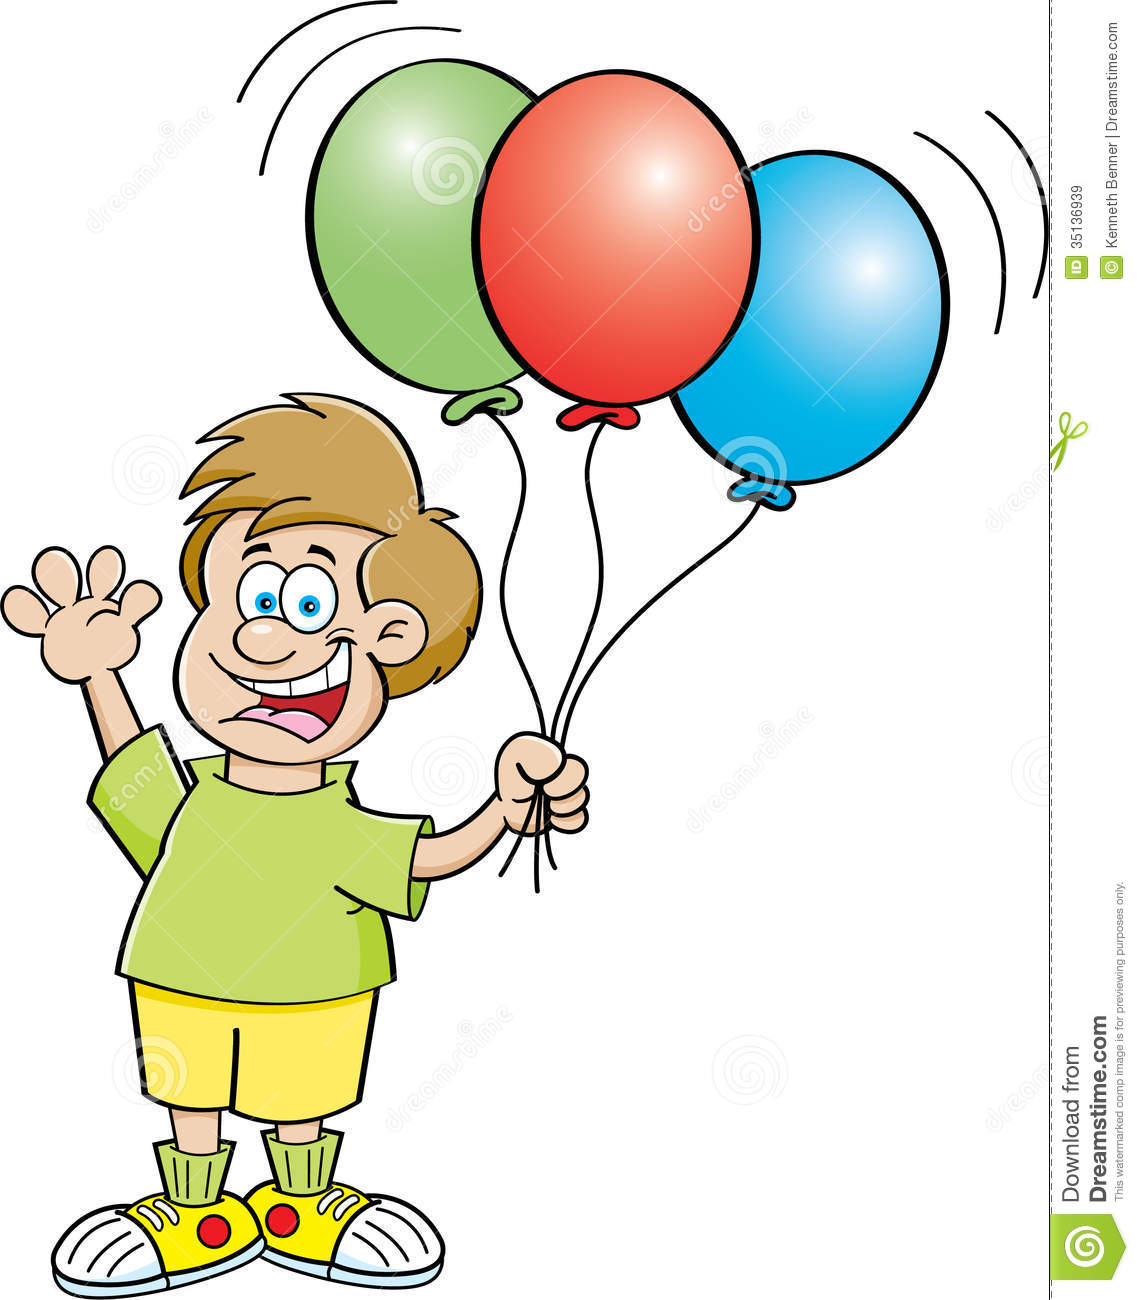 ballon clipart kid